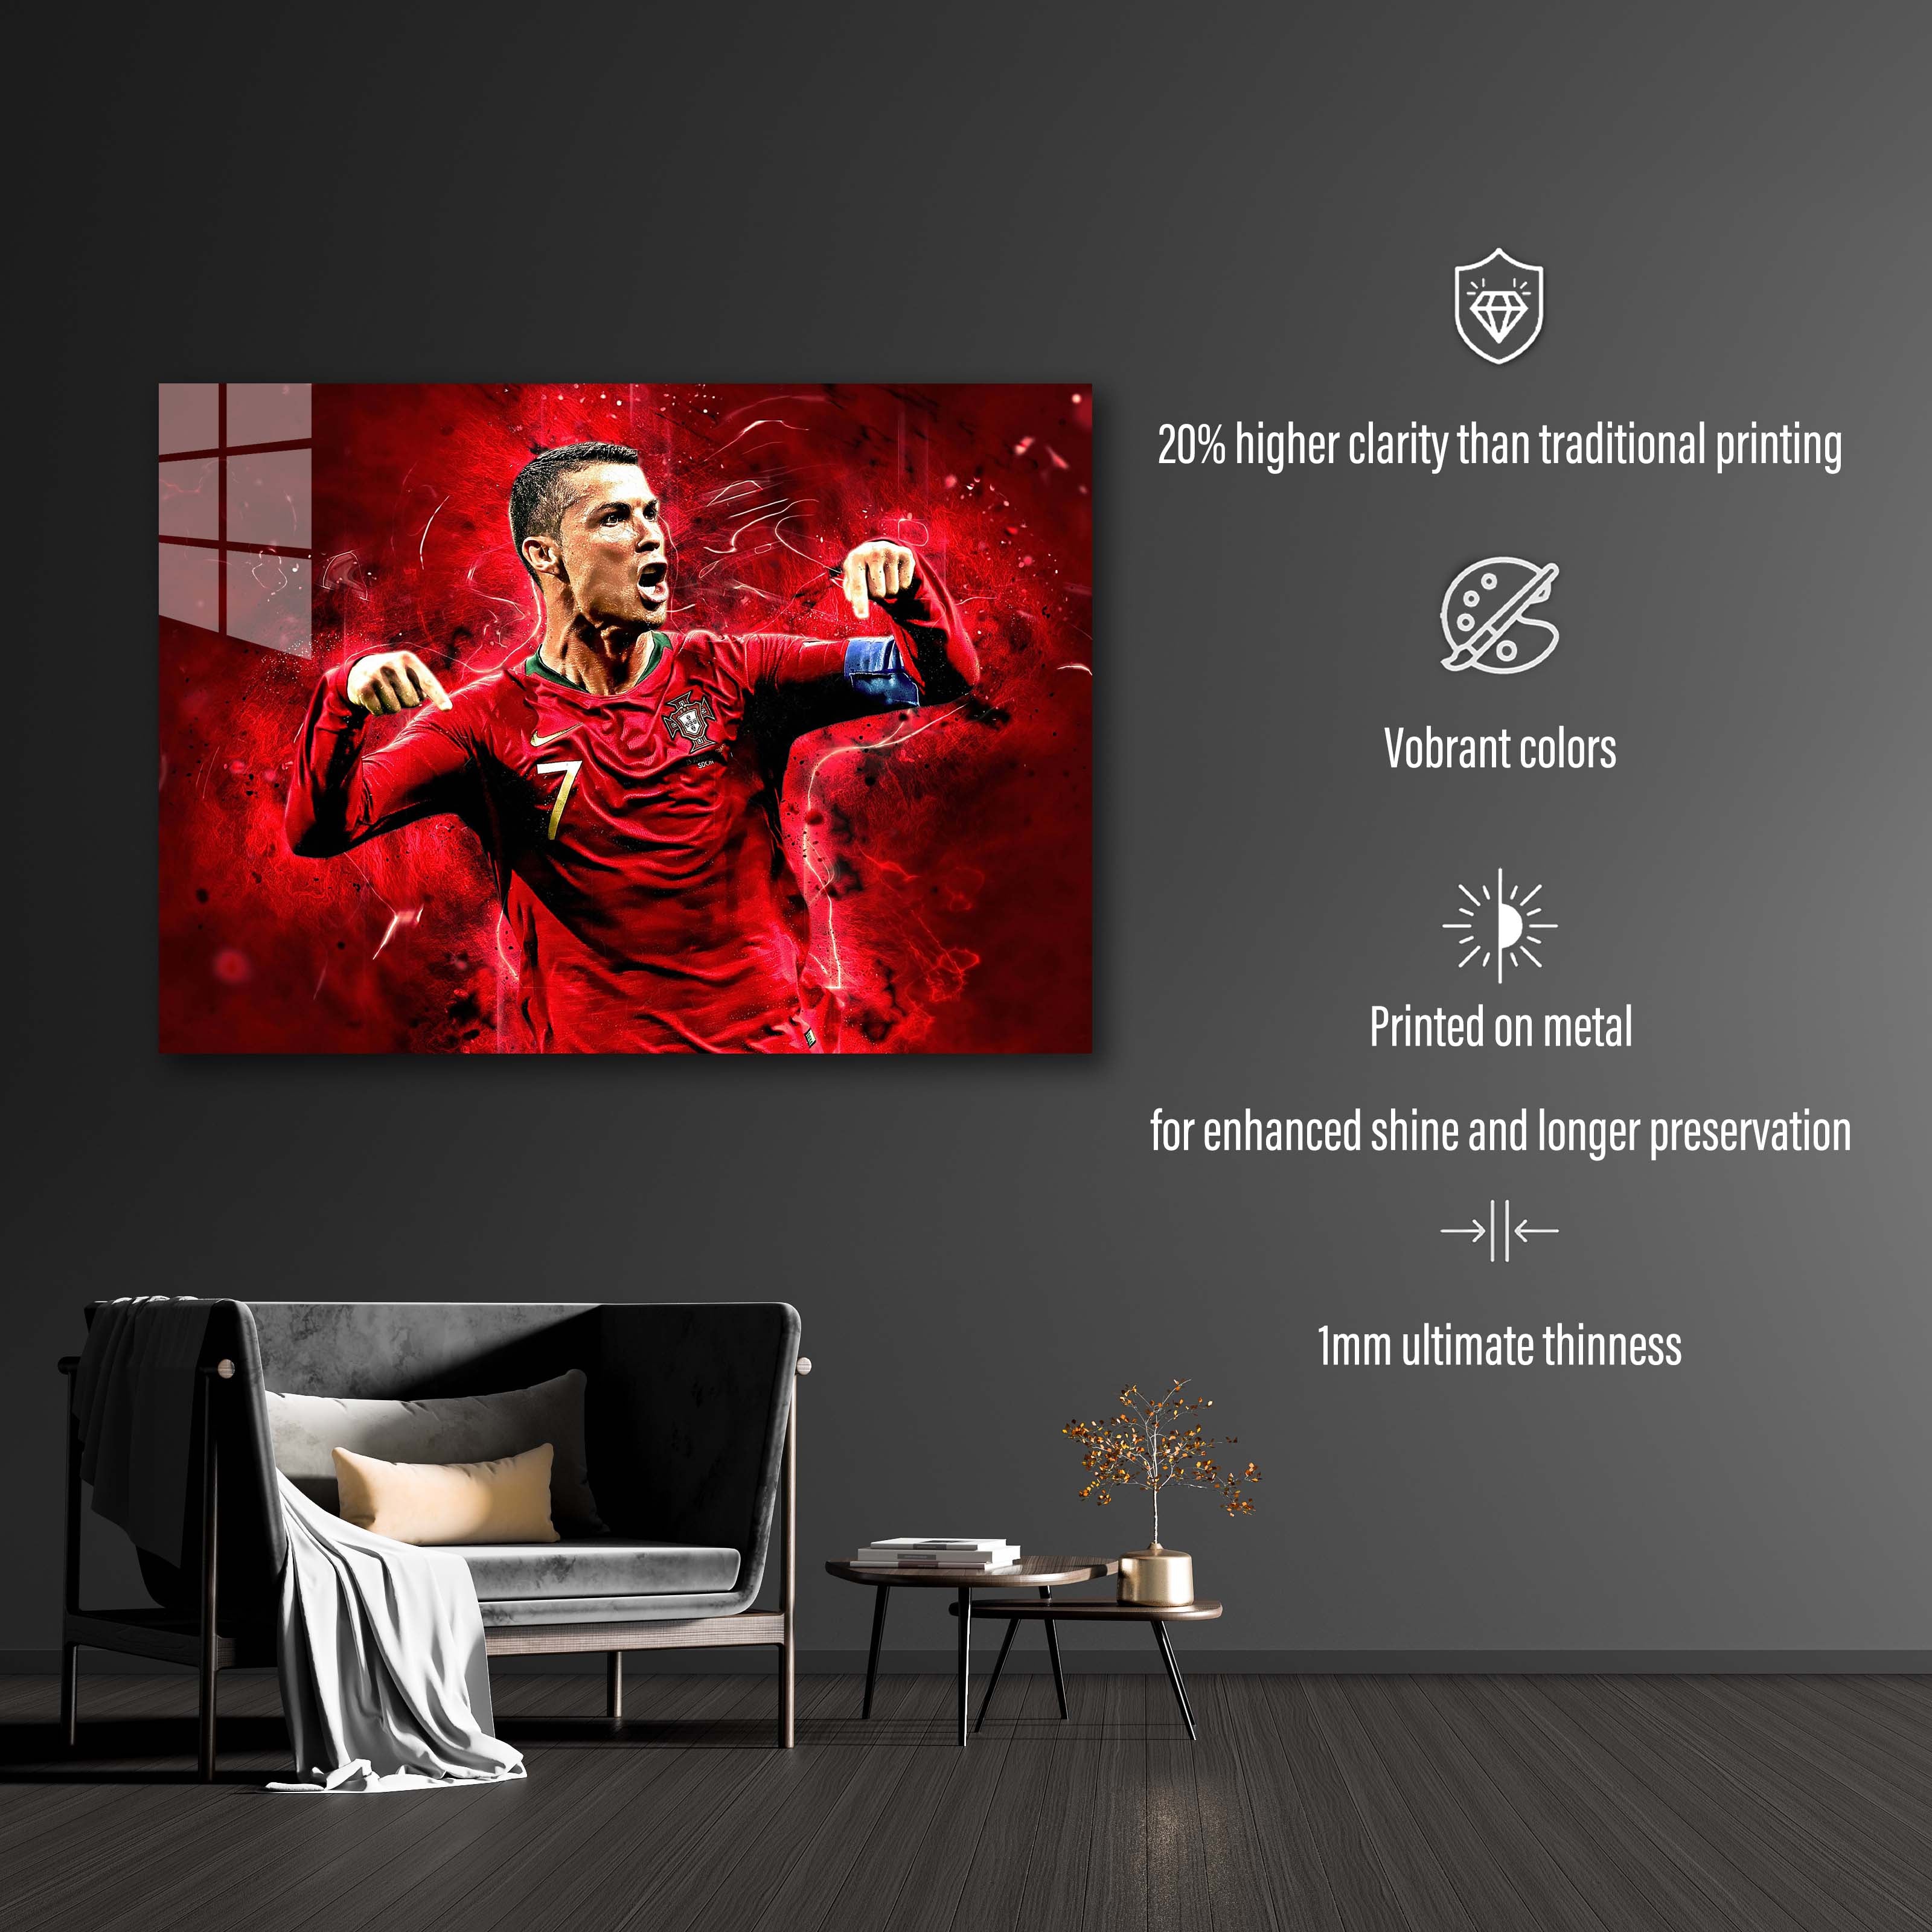 Cristiano Ronaldo Portugal -designed by @DynCreative